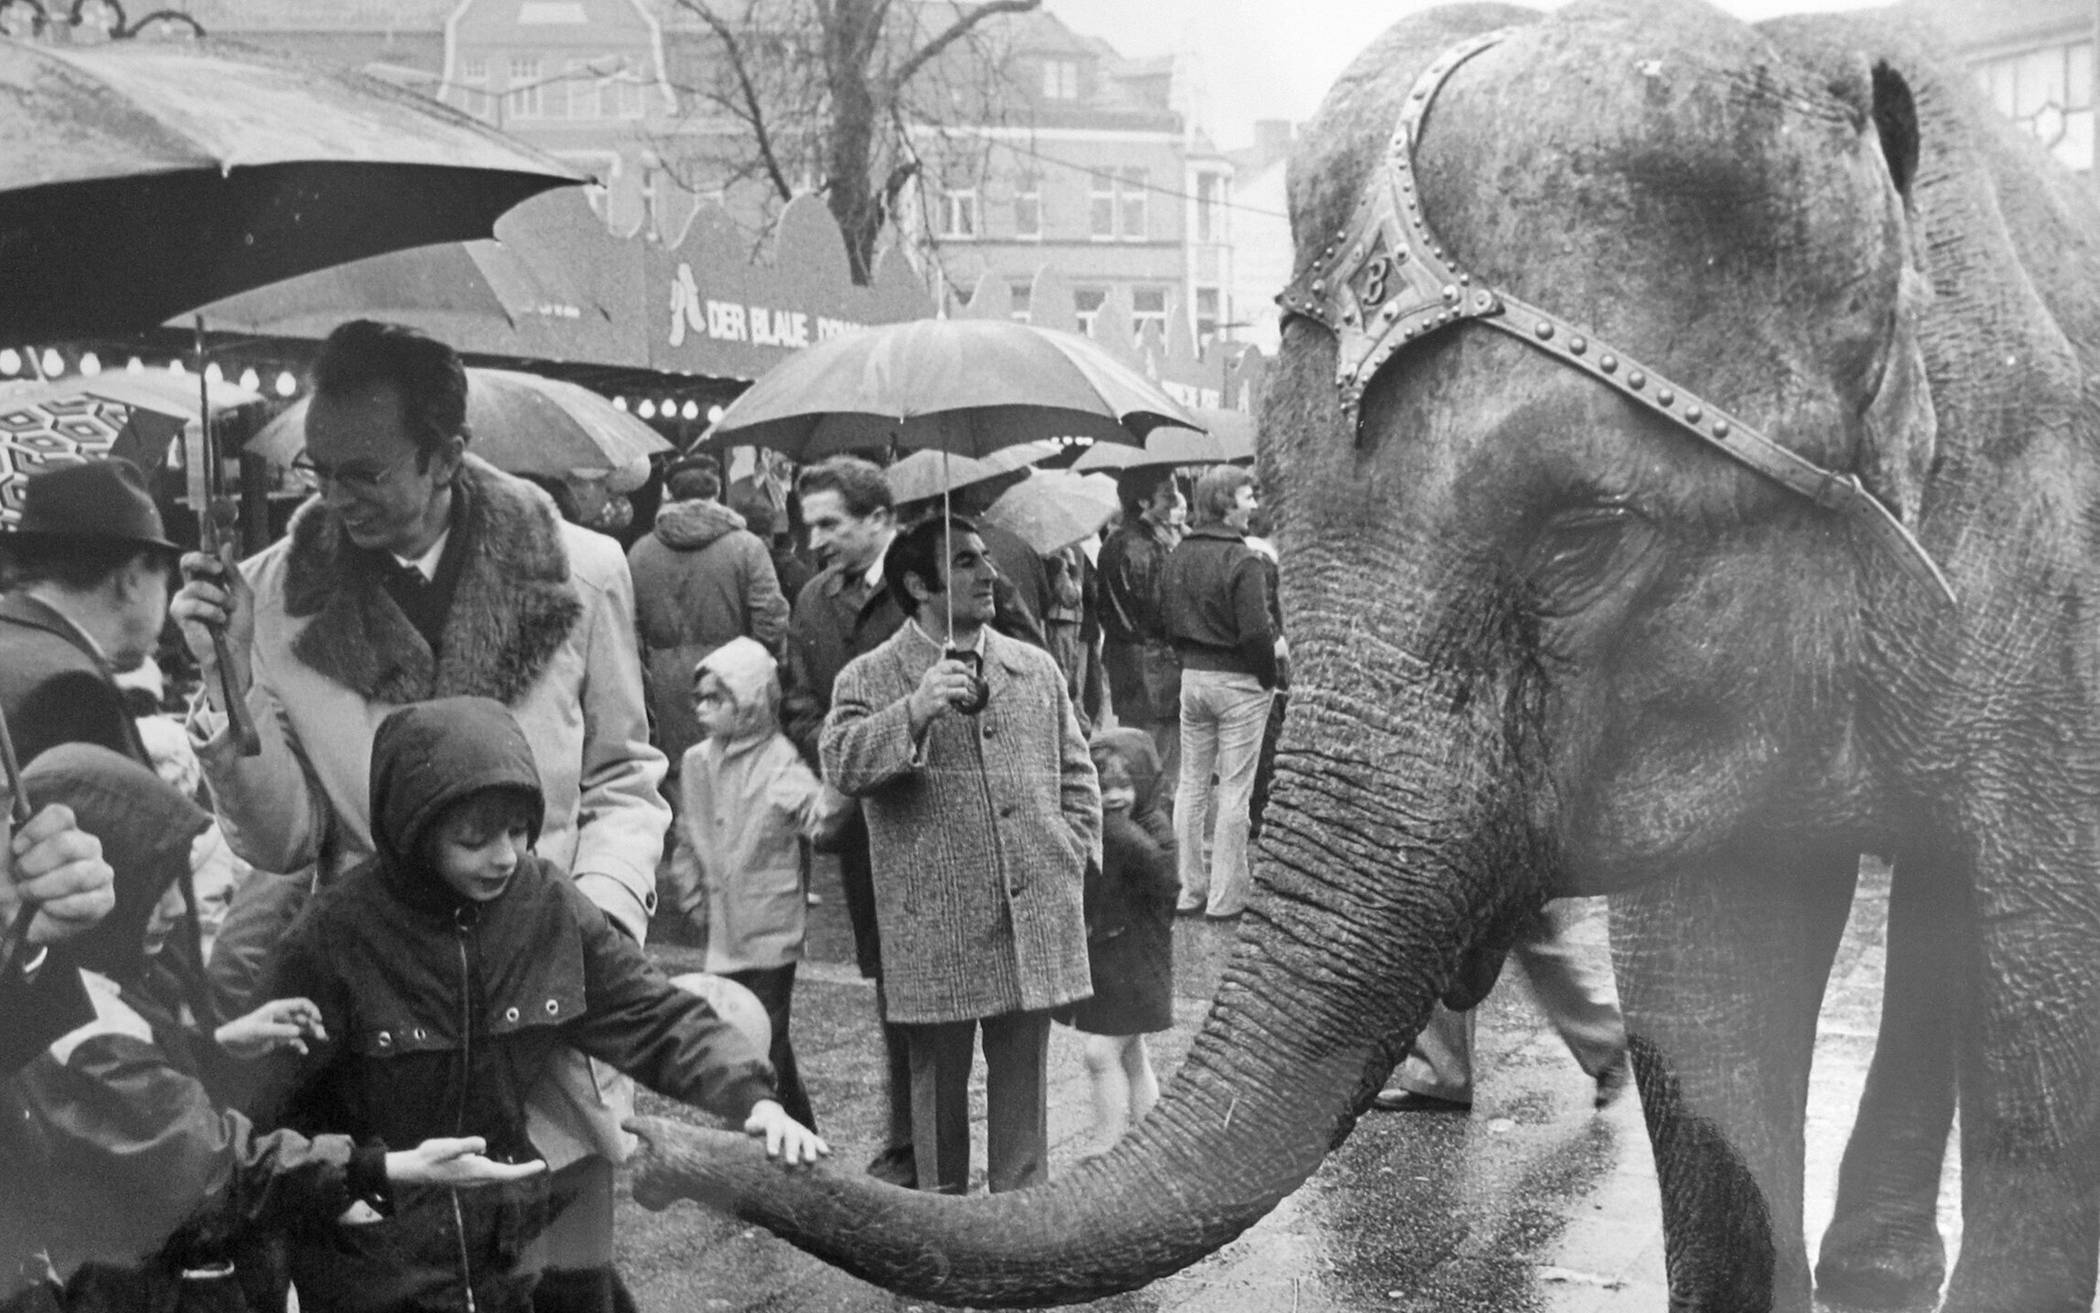  Es handelte sich um eine Elefantendame, die in den 70er Jahren die&nbsp; Blotschenmarktbesucher faszinierte. Ausweislich des Bildes ein sehr zutrauliches Tier. 